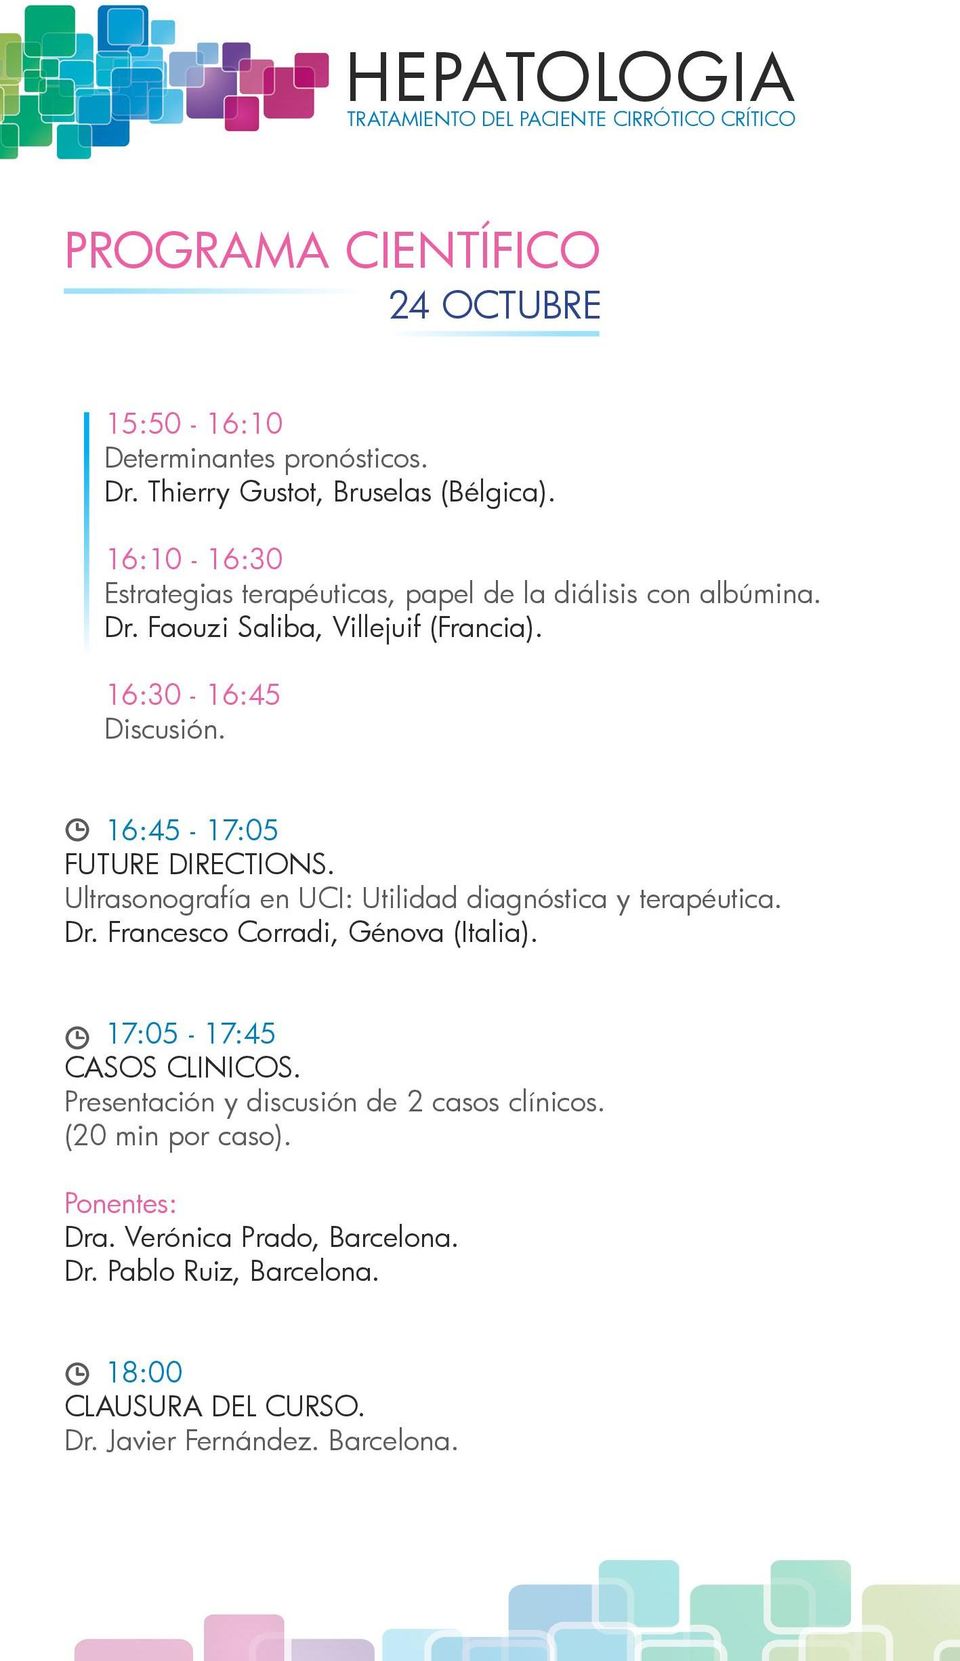 16:45-17:05 FUTURE DIRECTIONS. Ultrasonografía en UCI: Utilidad diagnóstica y terapéutica. Dr. Francesco Corradi, Génova (Italia).